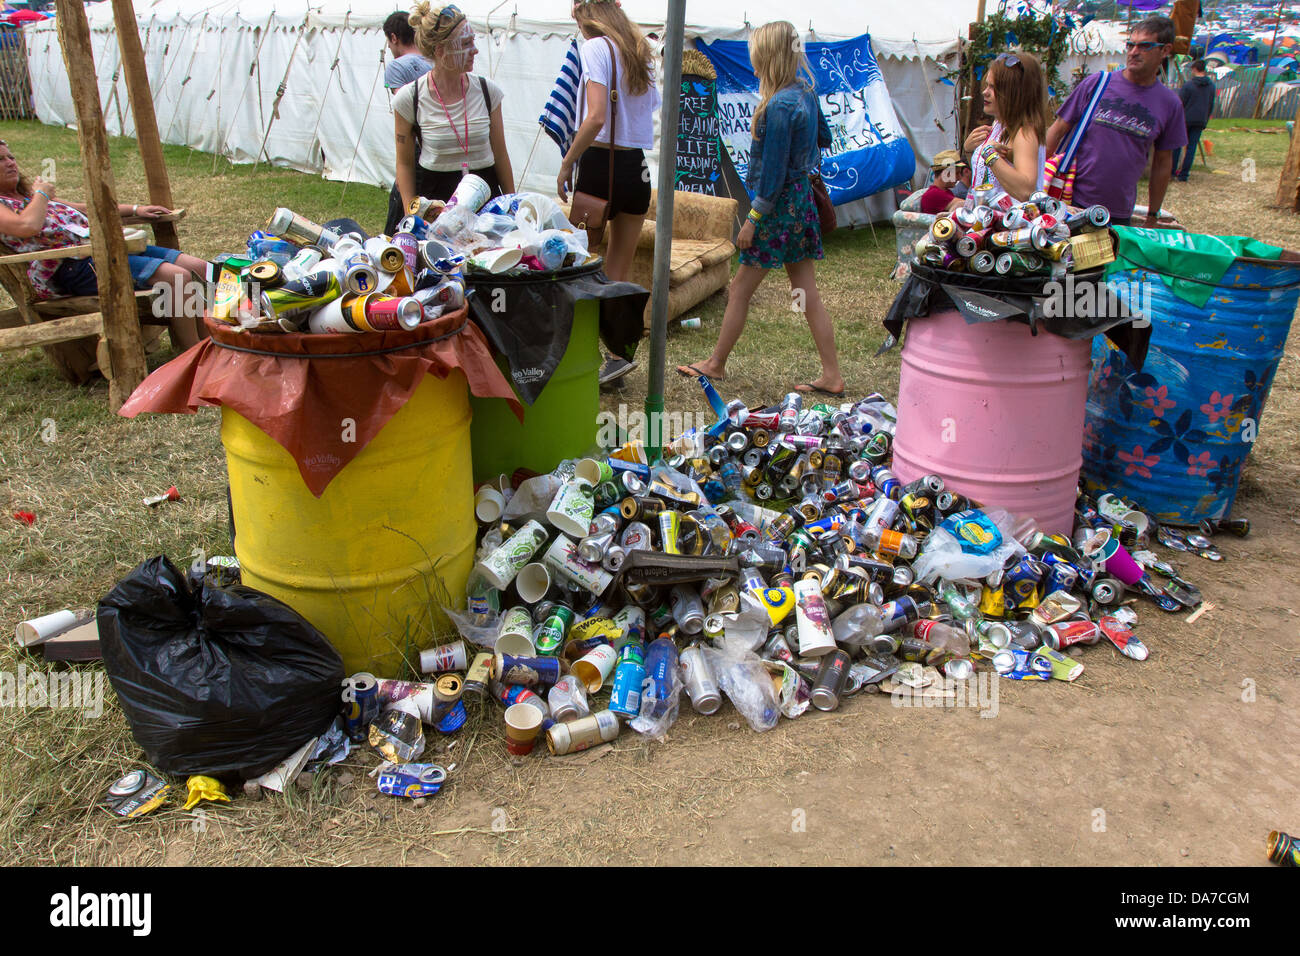 Traboccante bidoni della spazzatura presso il festival di Glastonbury 2013. Foto Stock